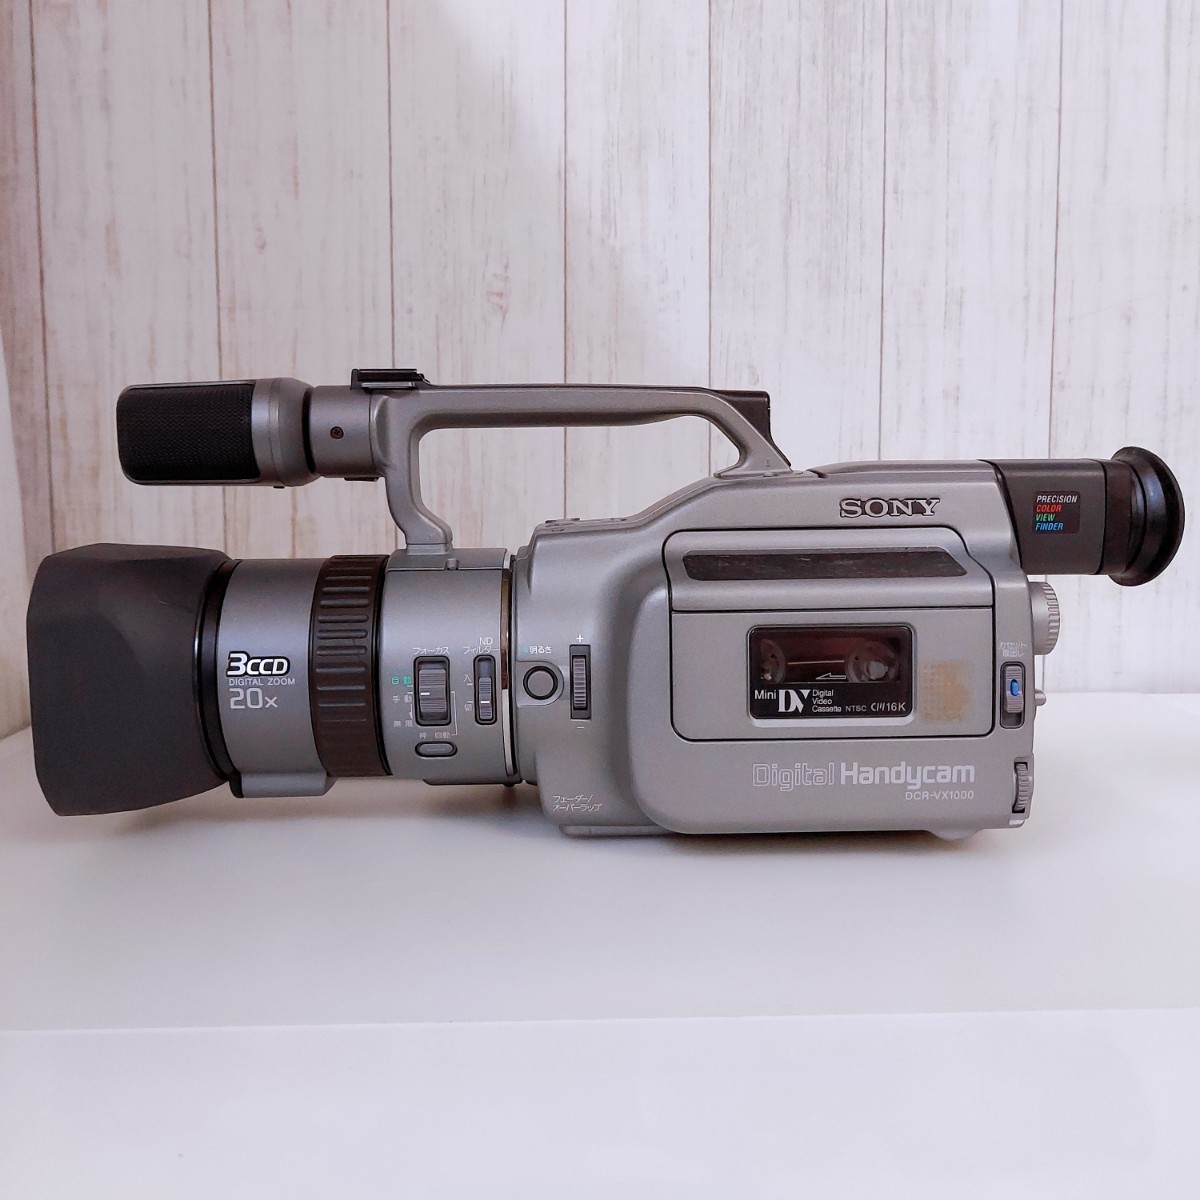 SONY ソニー DCR-VX1000 デジタルビデオカメラ NP-710 ハンディカム ジャンク ビデオカメラ 